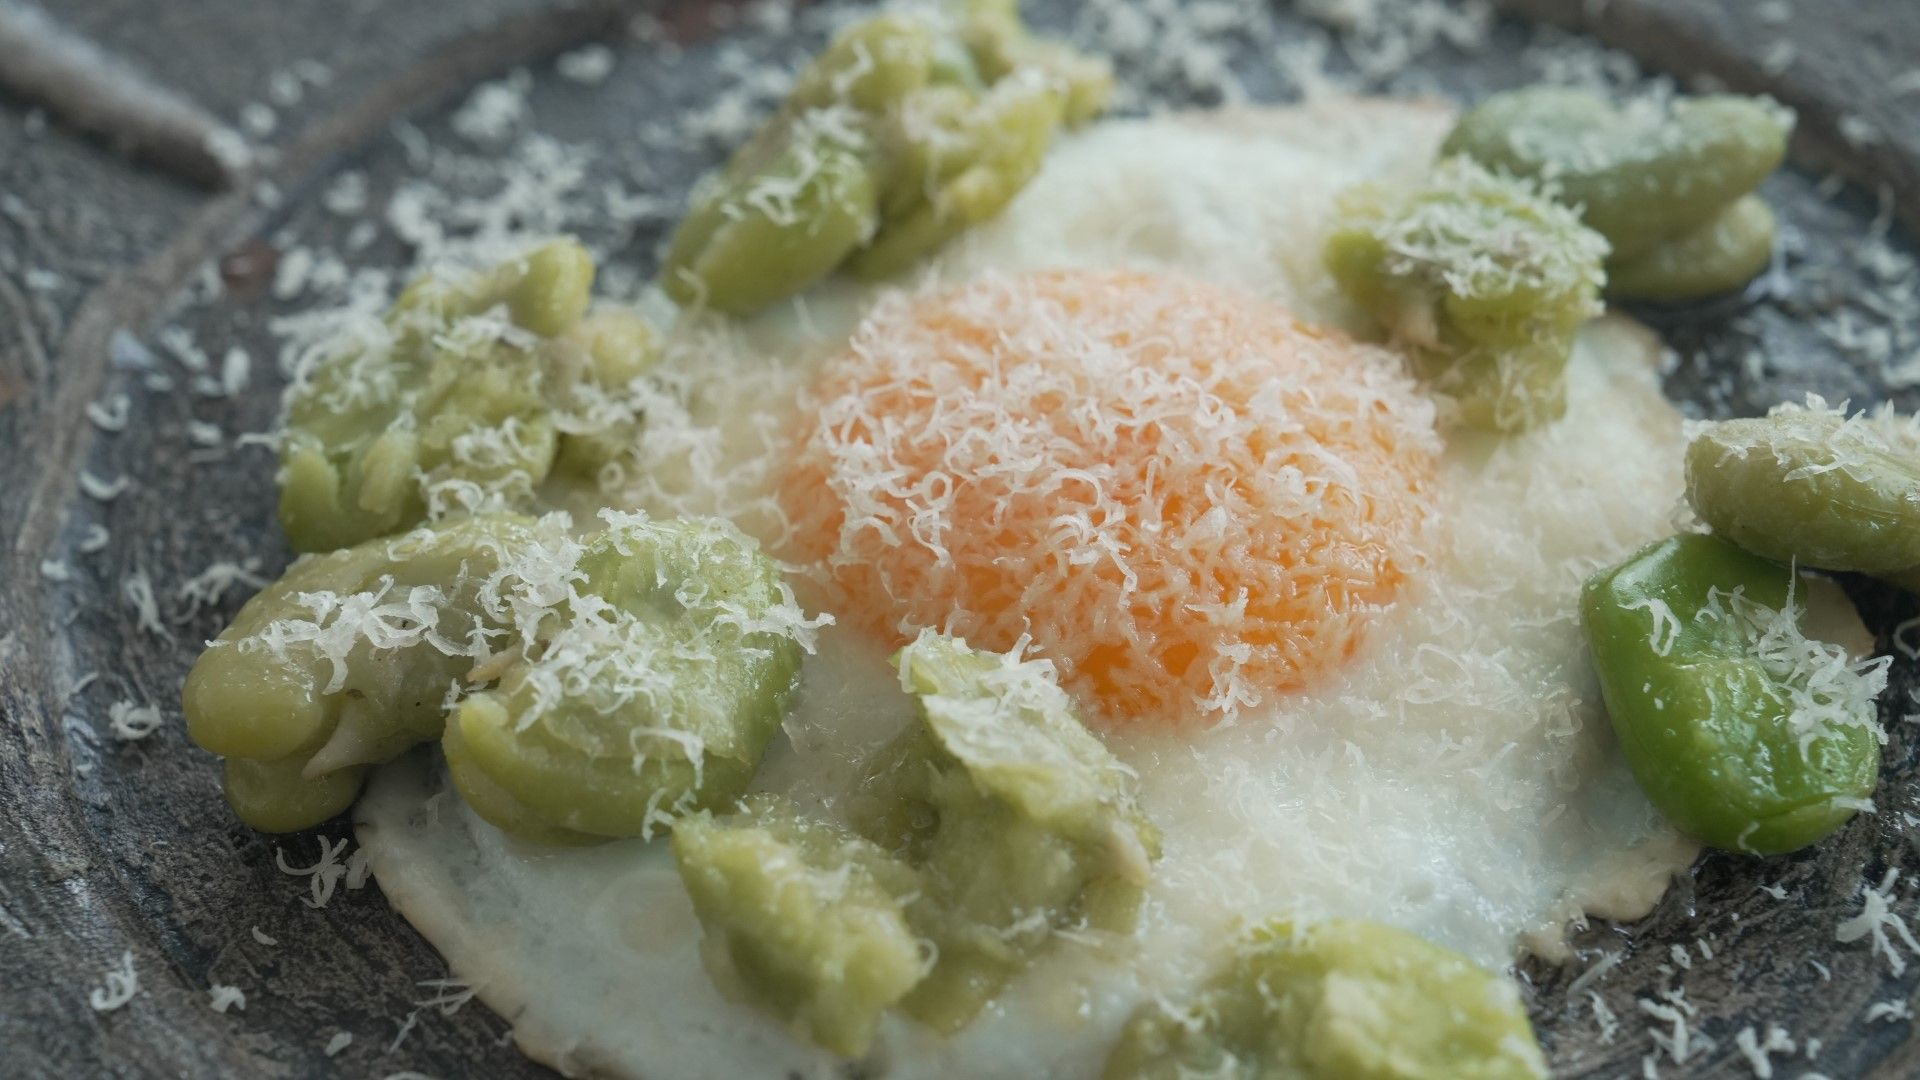 コンビニの冷凍野菜で簡単･絶品イタリアン作る技 生鮮野菜とは別物と考えると｢おいしい一皿｣が作れる